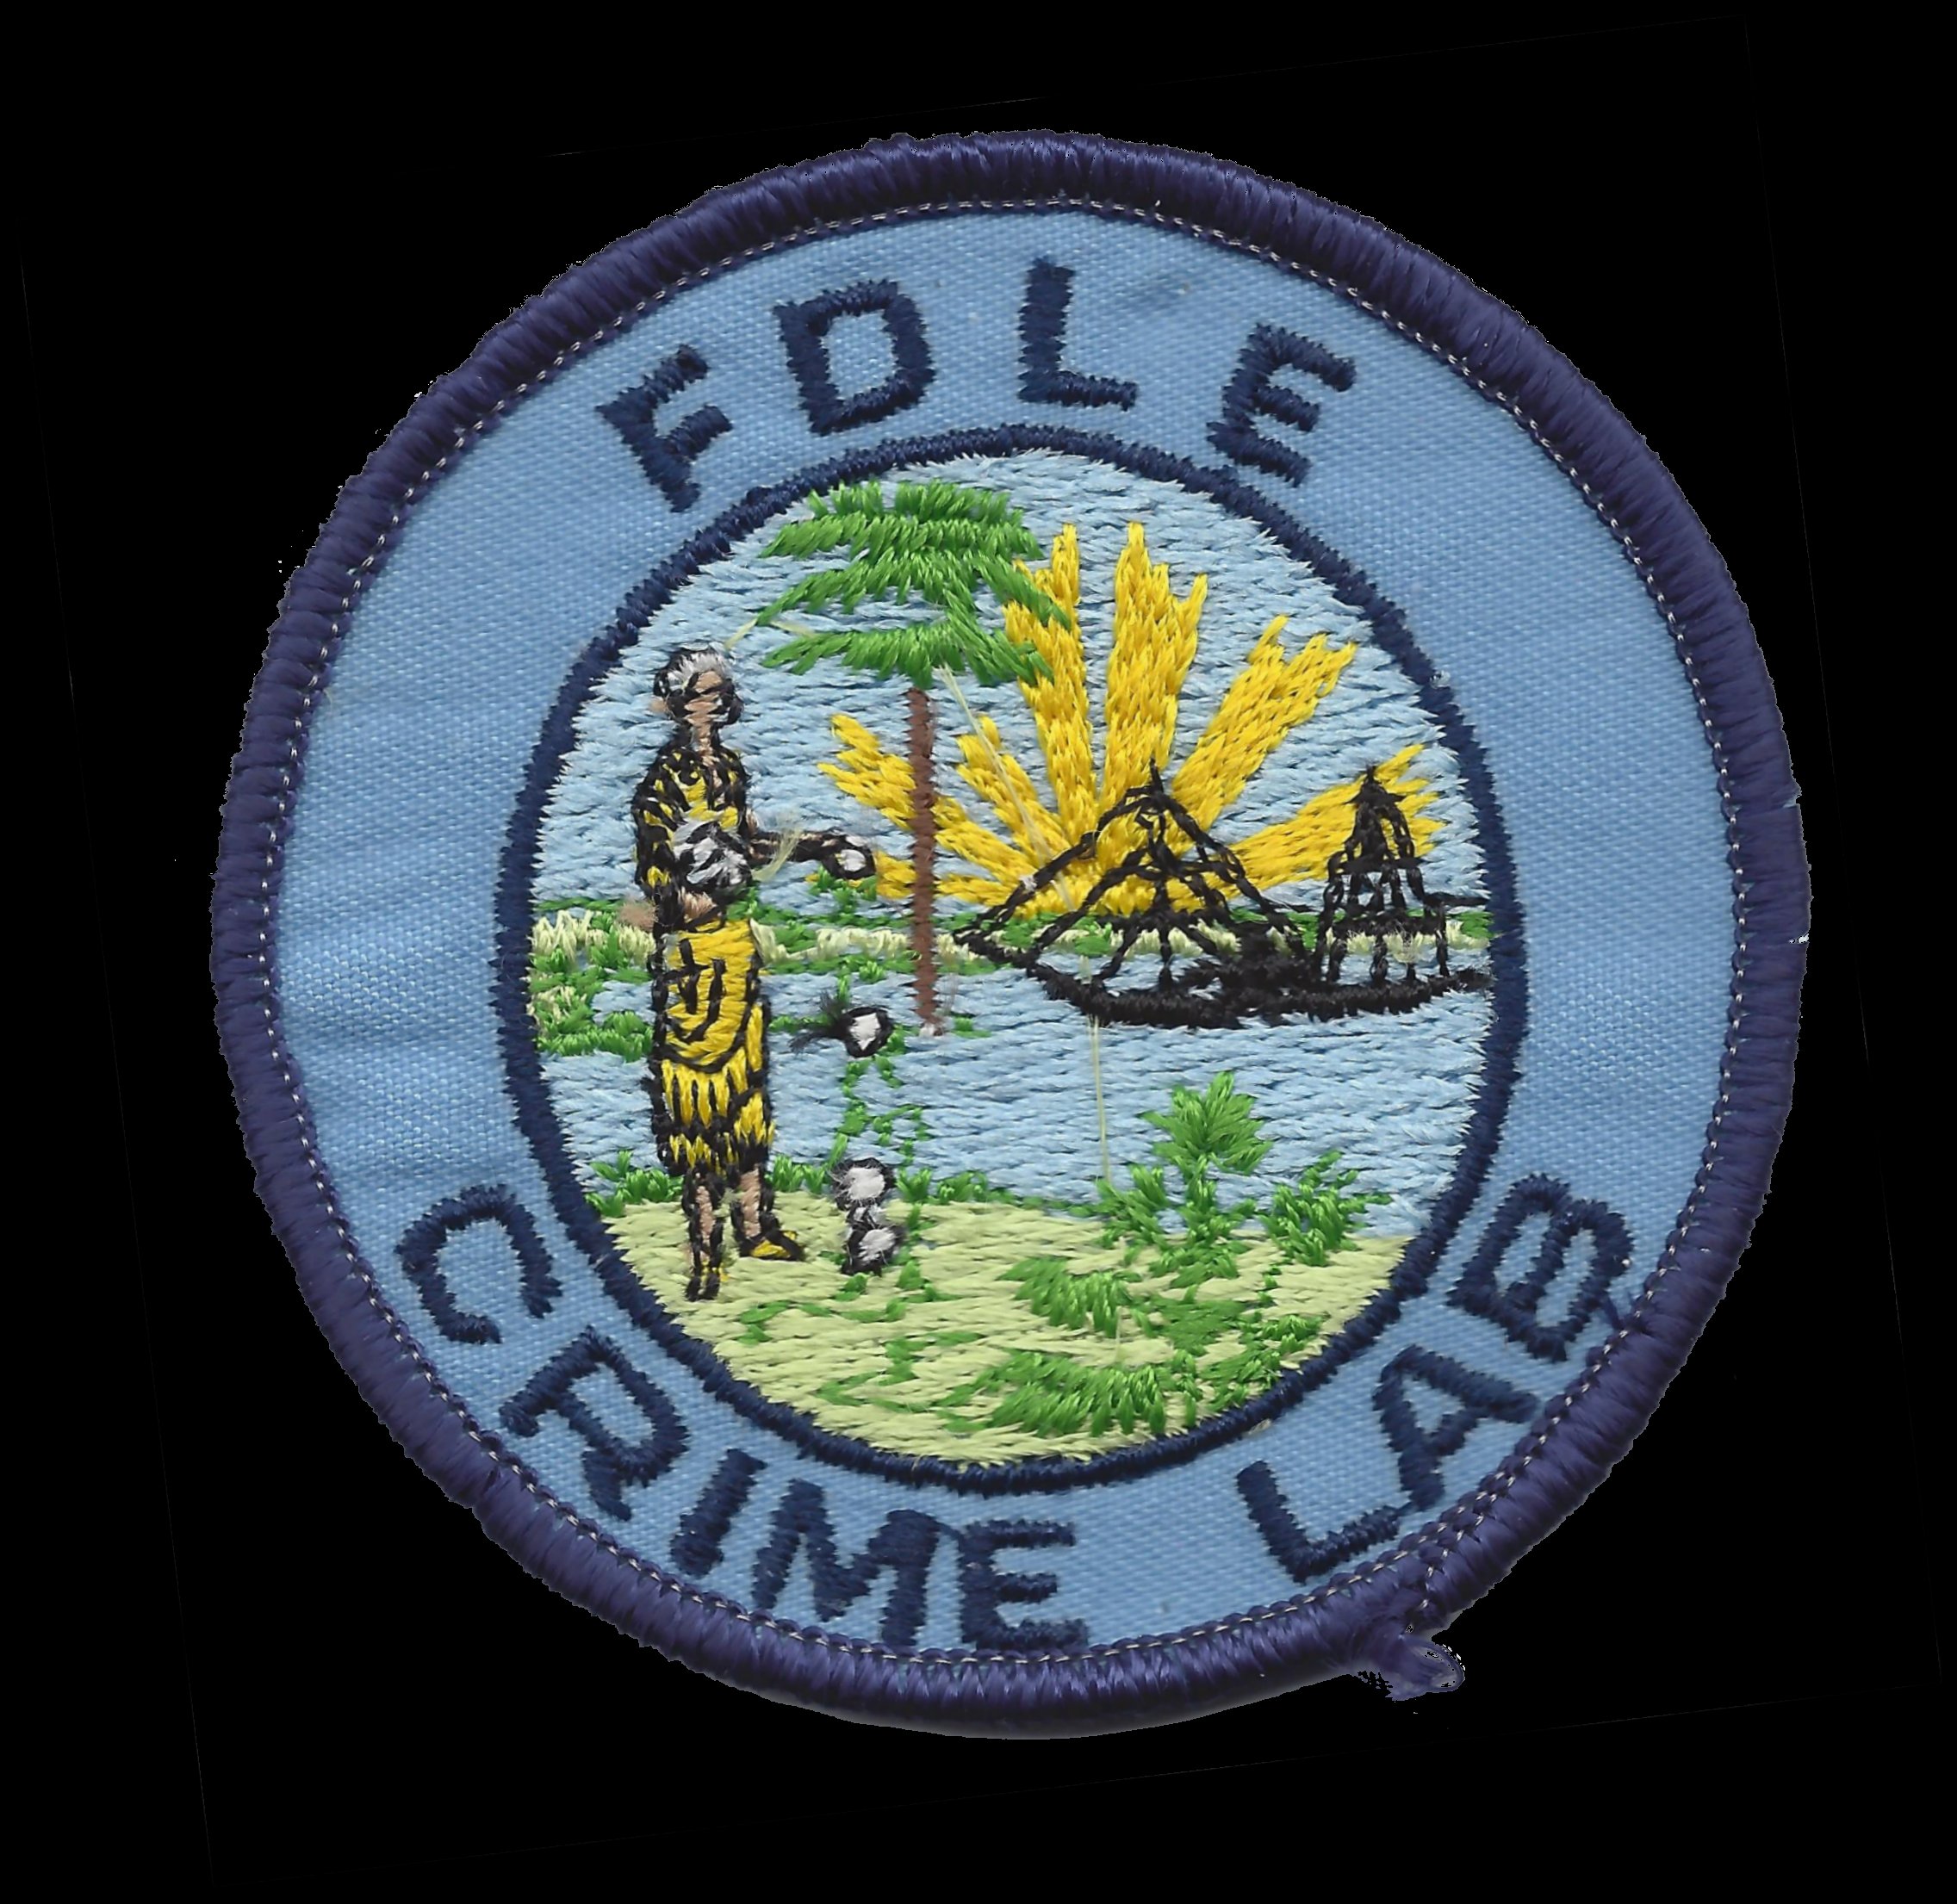 FDLE Crime Lab Patch